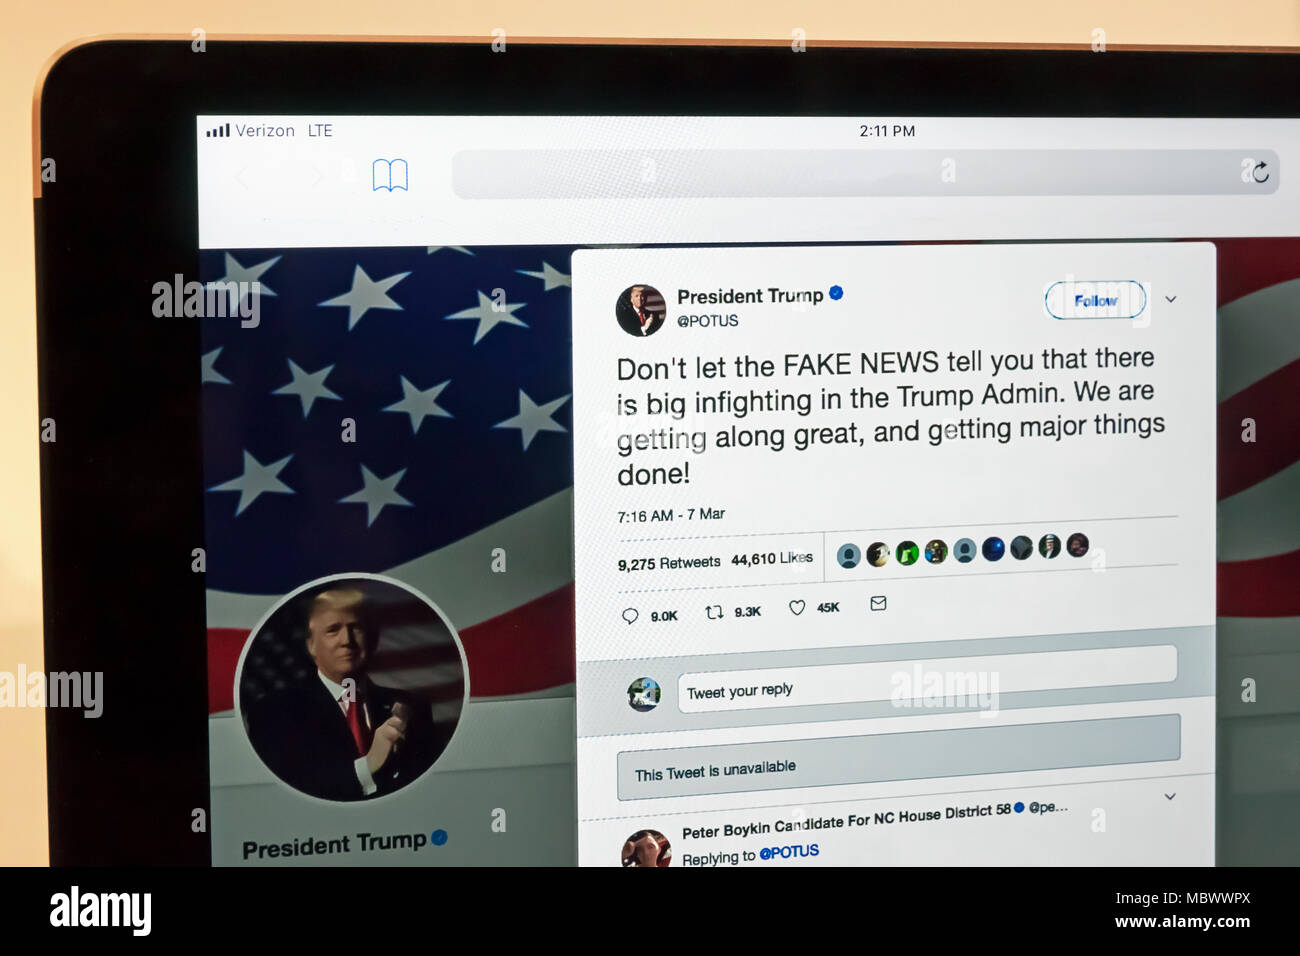 Le président Donald Trump's tweet concernant de fausses nouvelles sur le président de la United States' (POTUS) compte Twitter (un domaine public site web). Banque D'Images